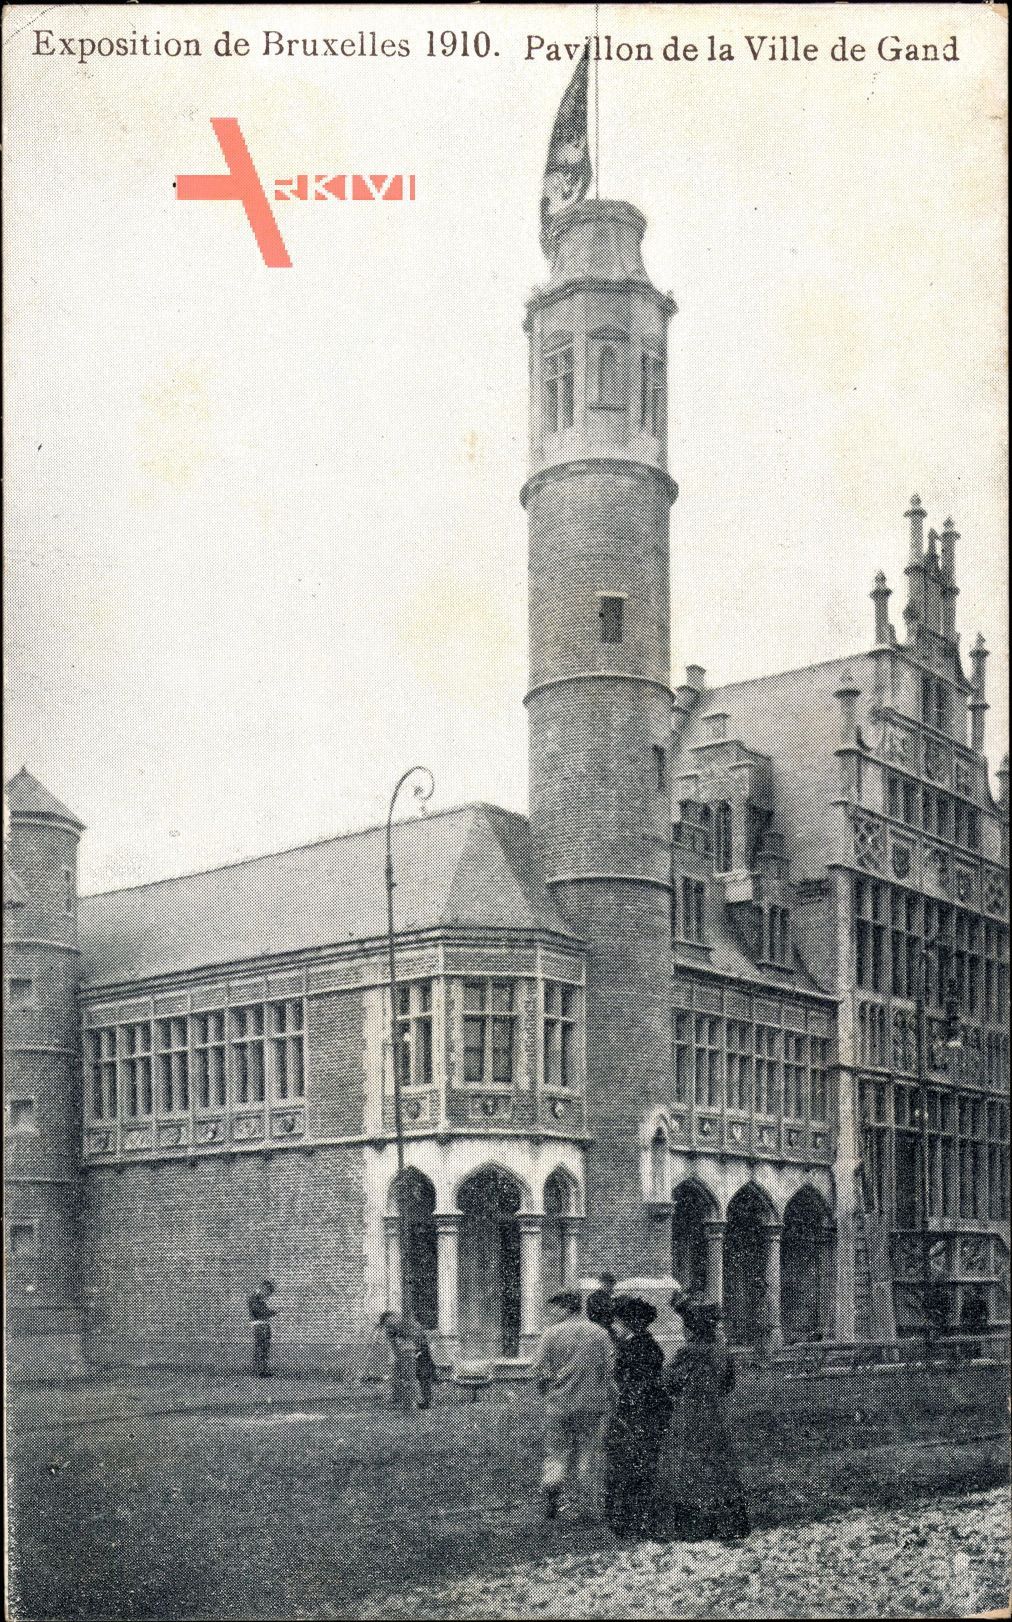 Brüssel, Expo, Weltausstellung 1910, Pavillon de la Ville de Gand